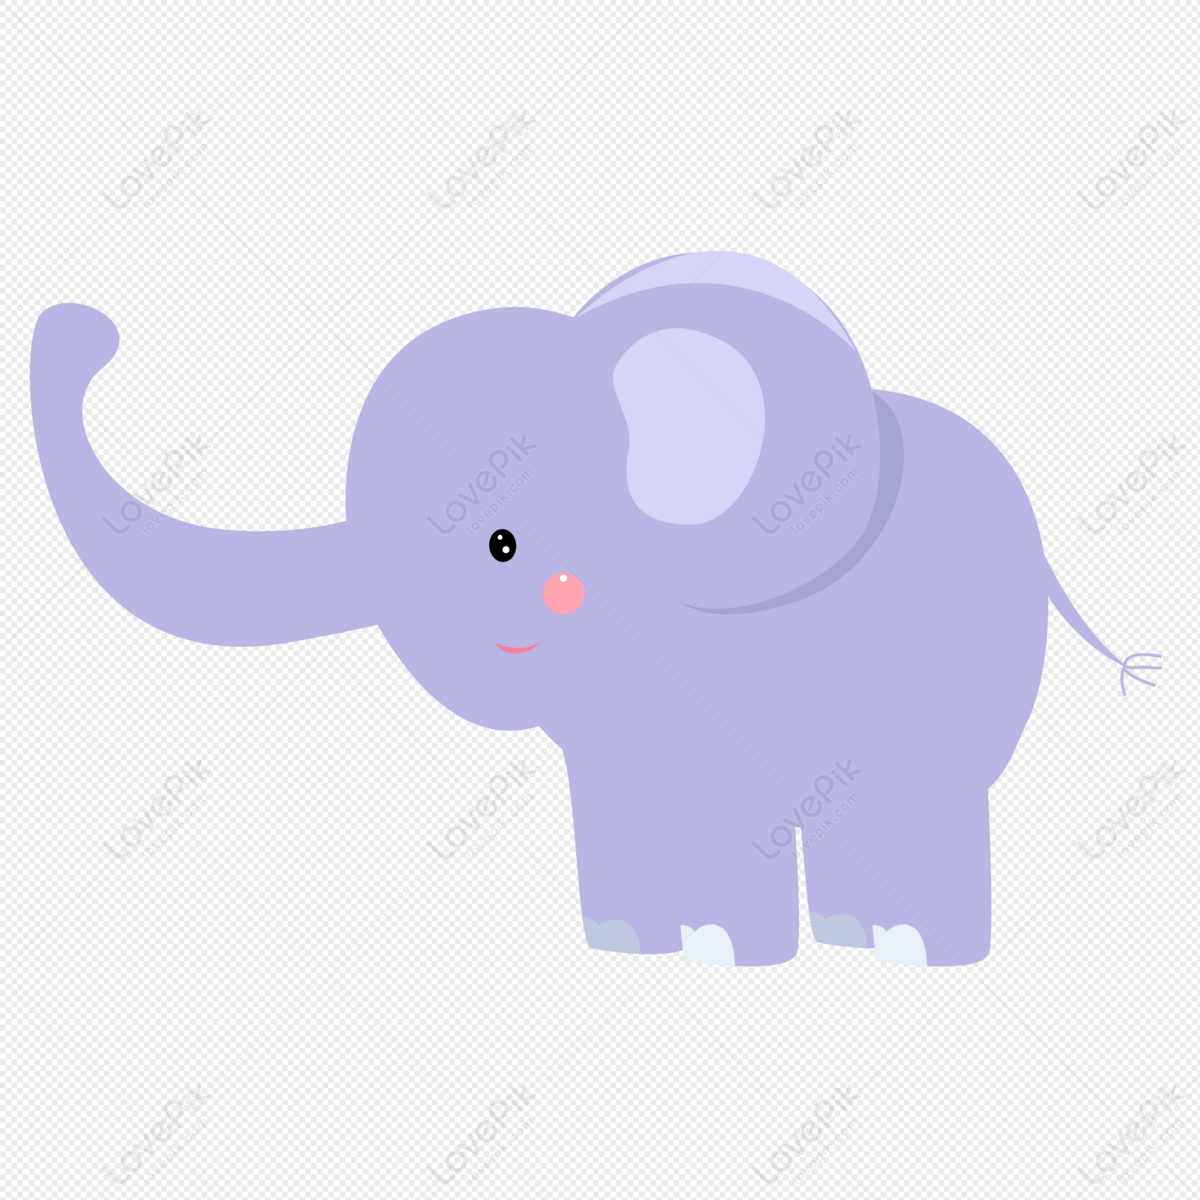 Elephant animal cartoon elephant, cartoon animal, dumbo, anime png transparent background